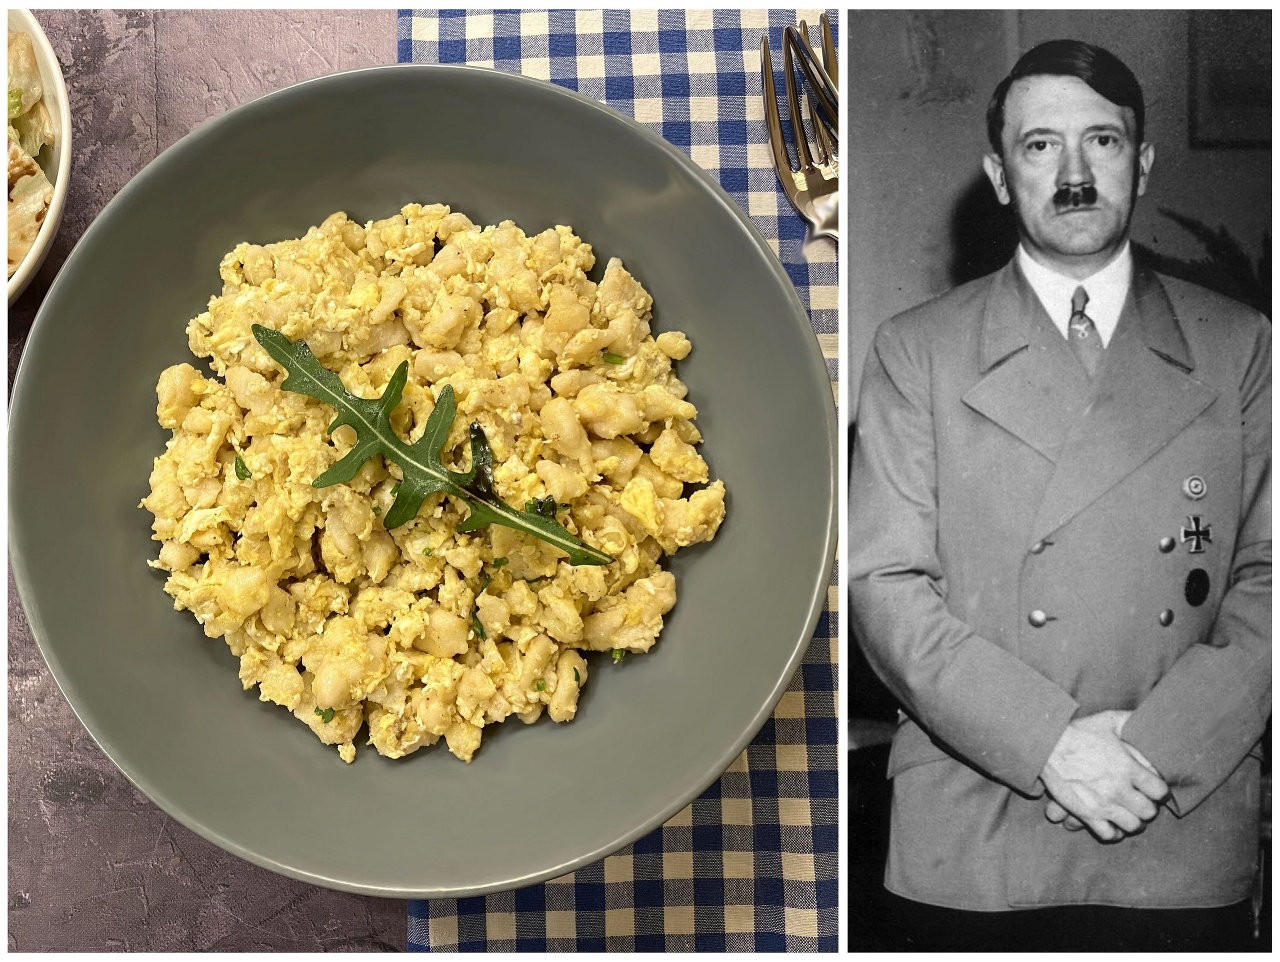 Naozaj to bolo obľúbené jedlo Adolfa Hitlera?